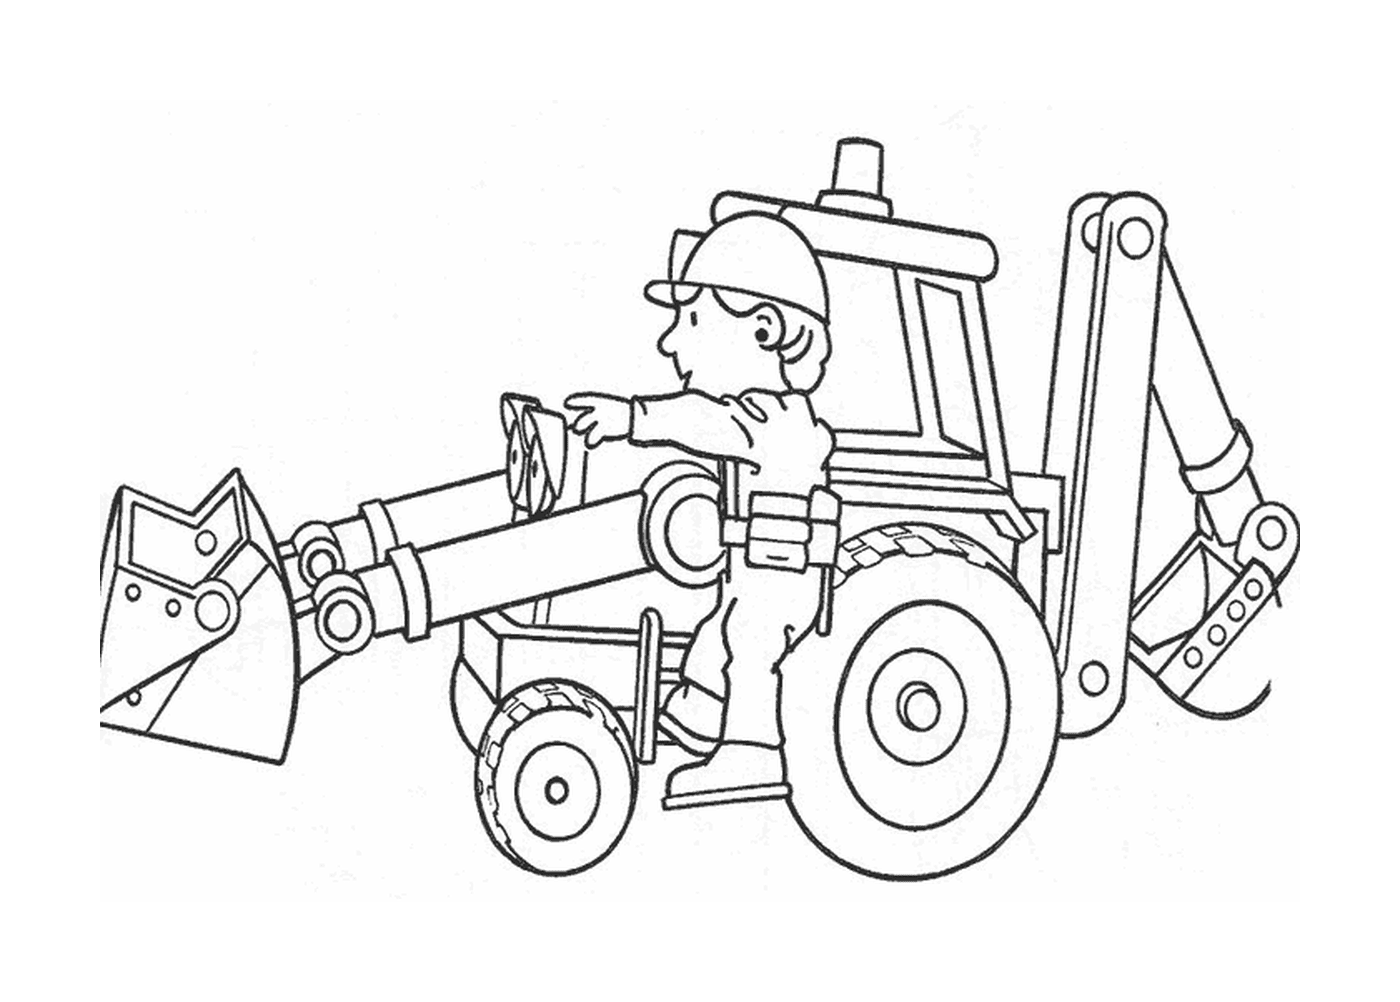  Un hombre sentado en un tractor 